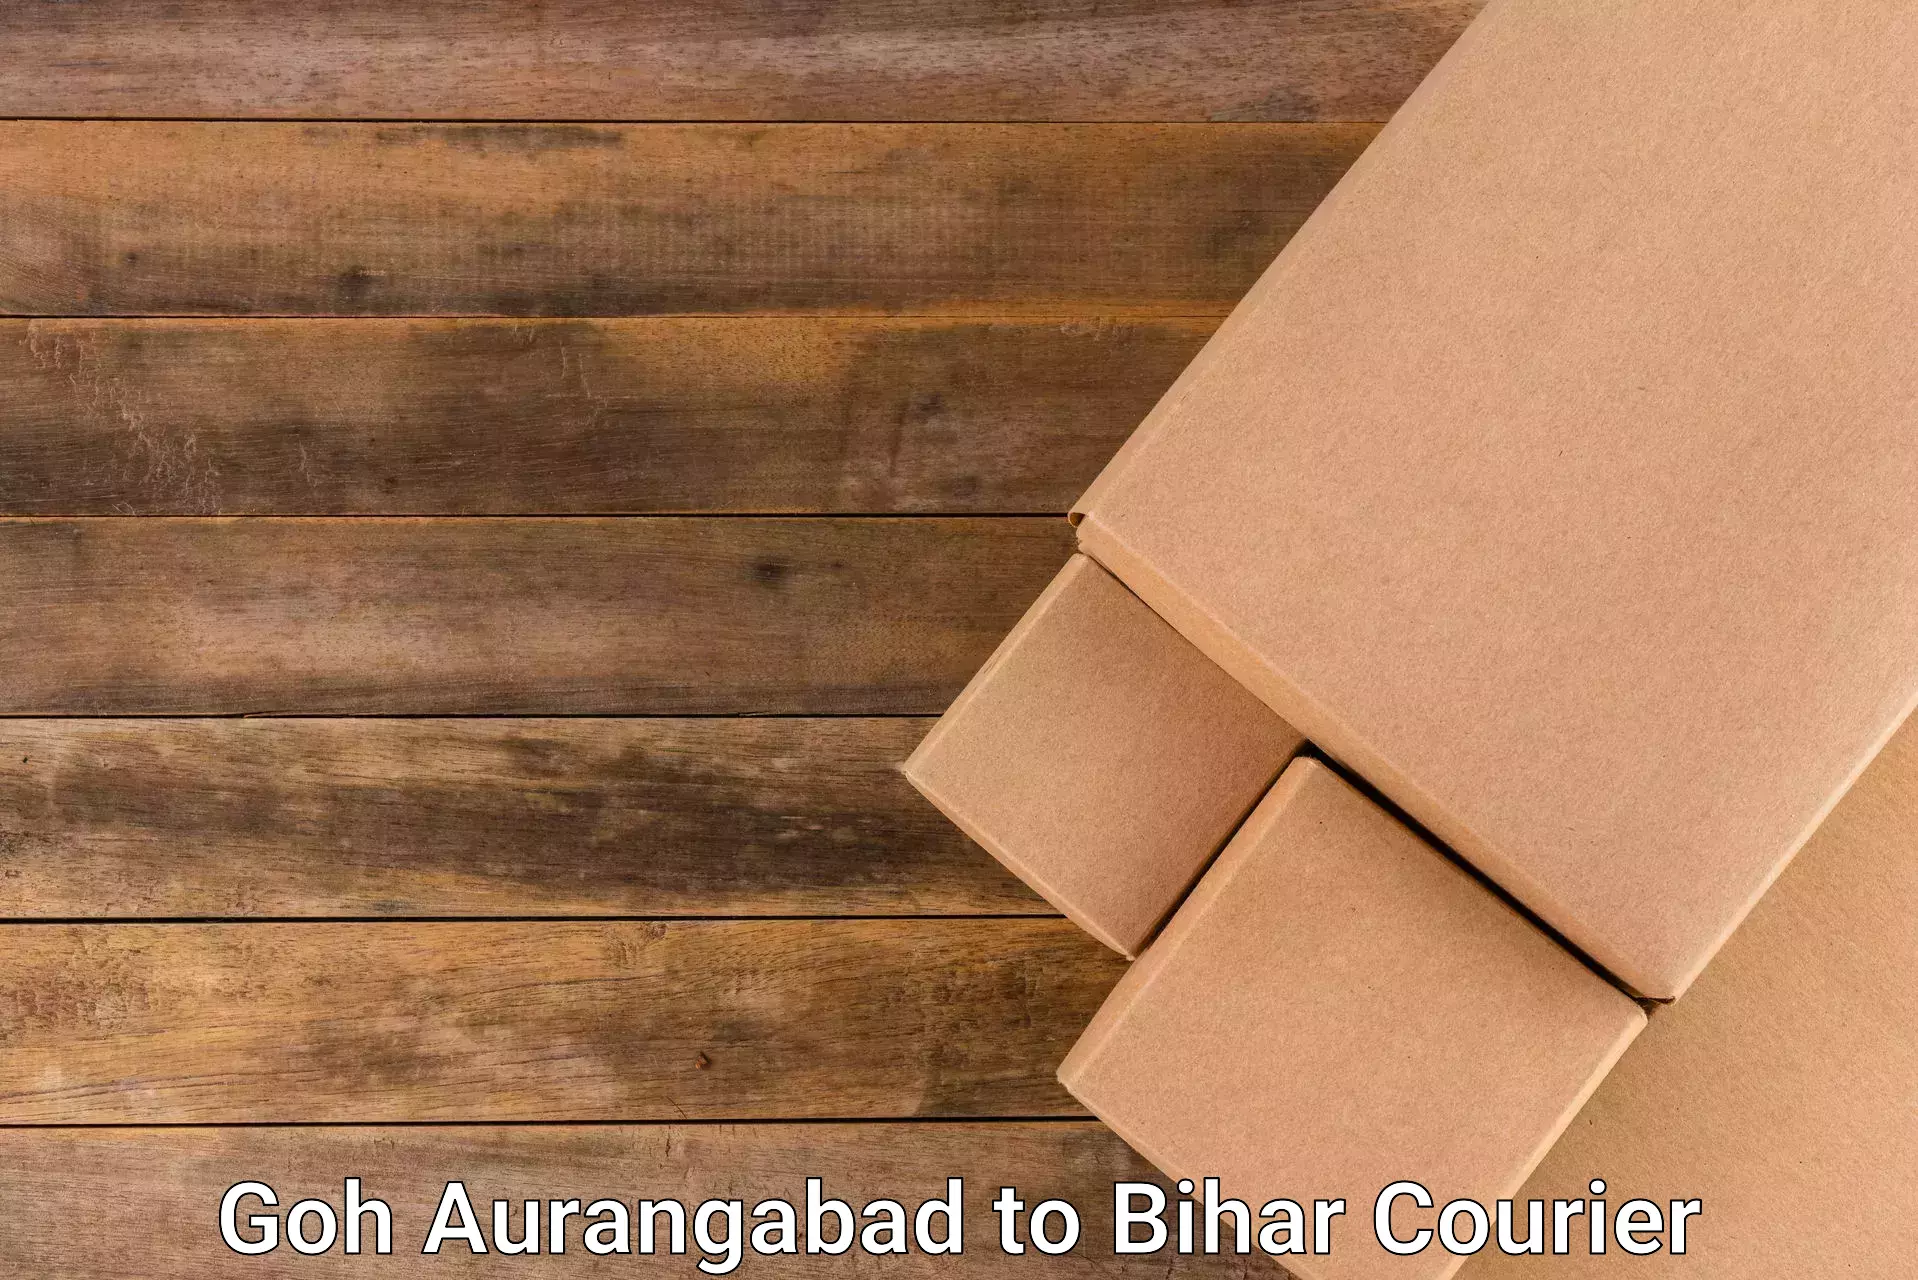 Rural area delivery in Goh Aurangabad to Sheohar